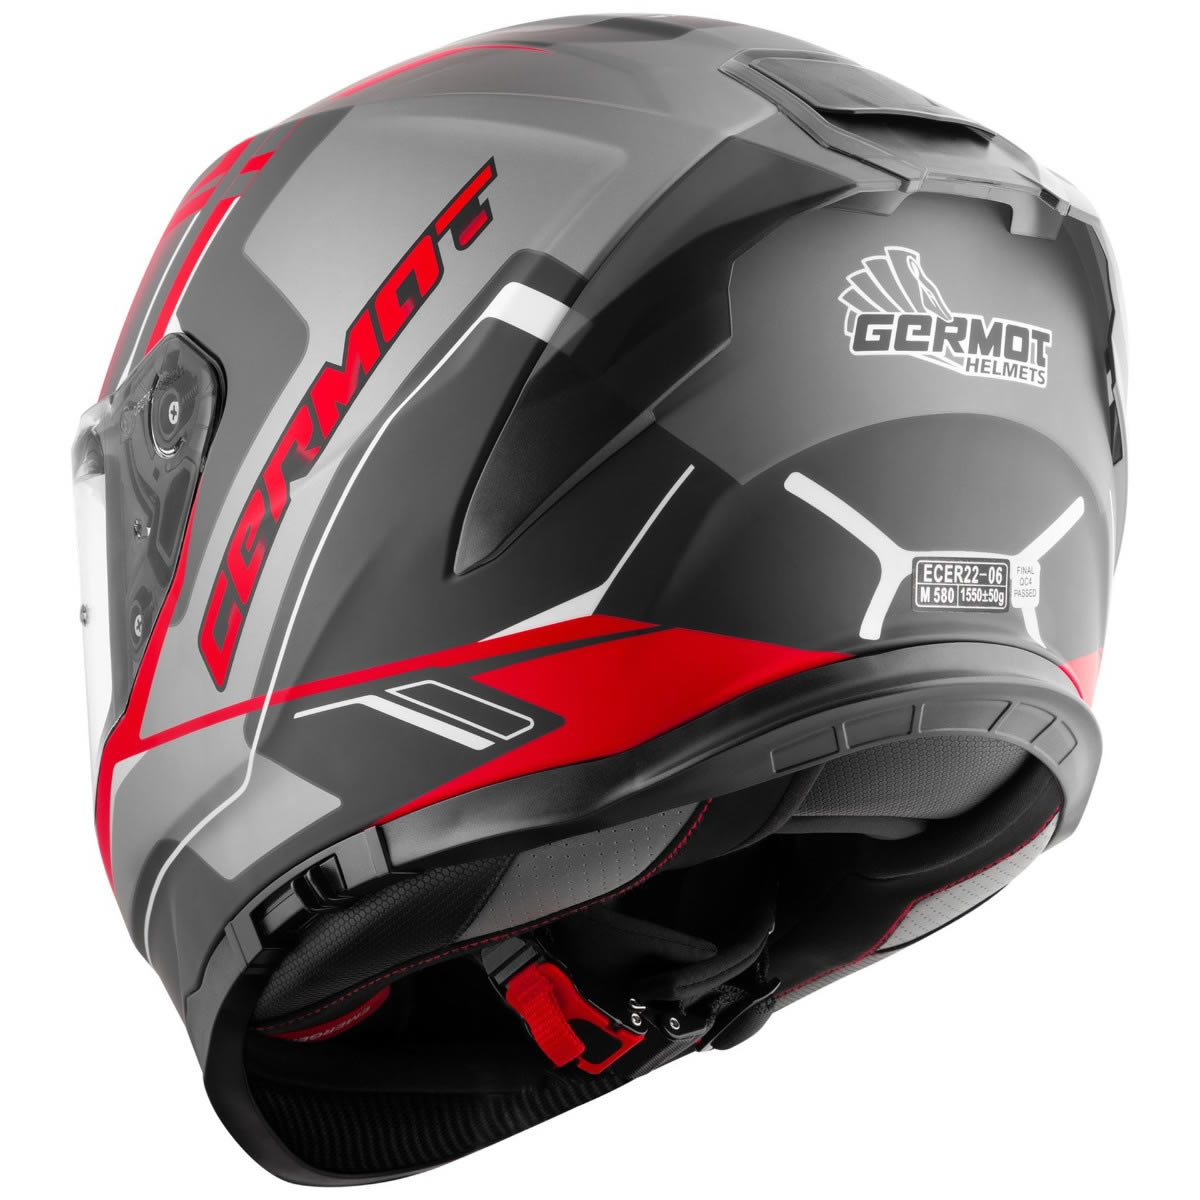 Germot GM 350 Helm, schwarz-rot matt